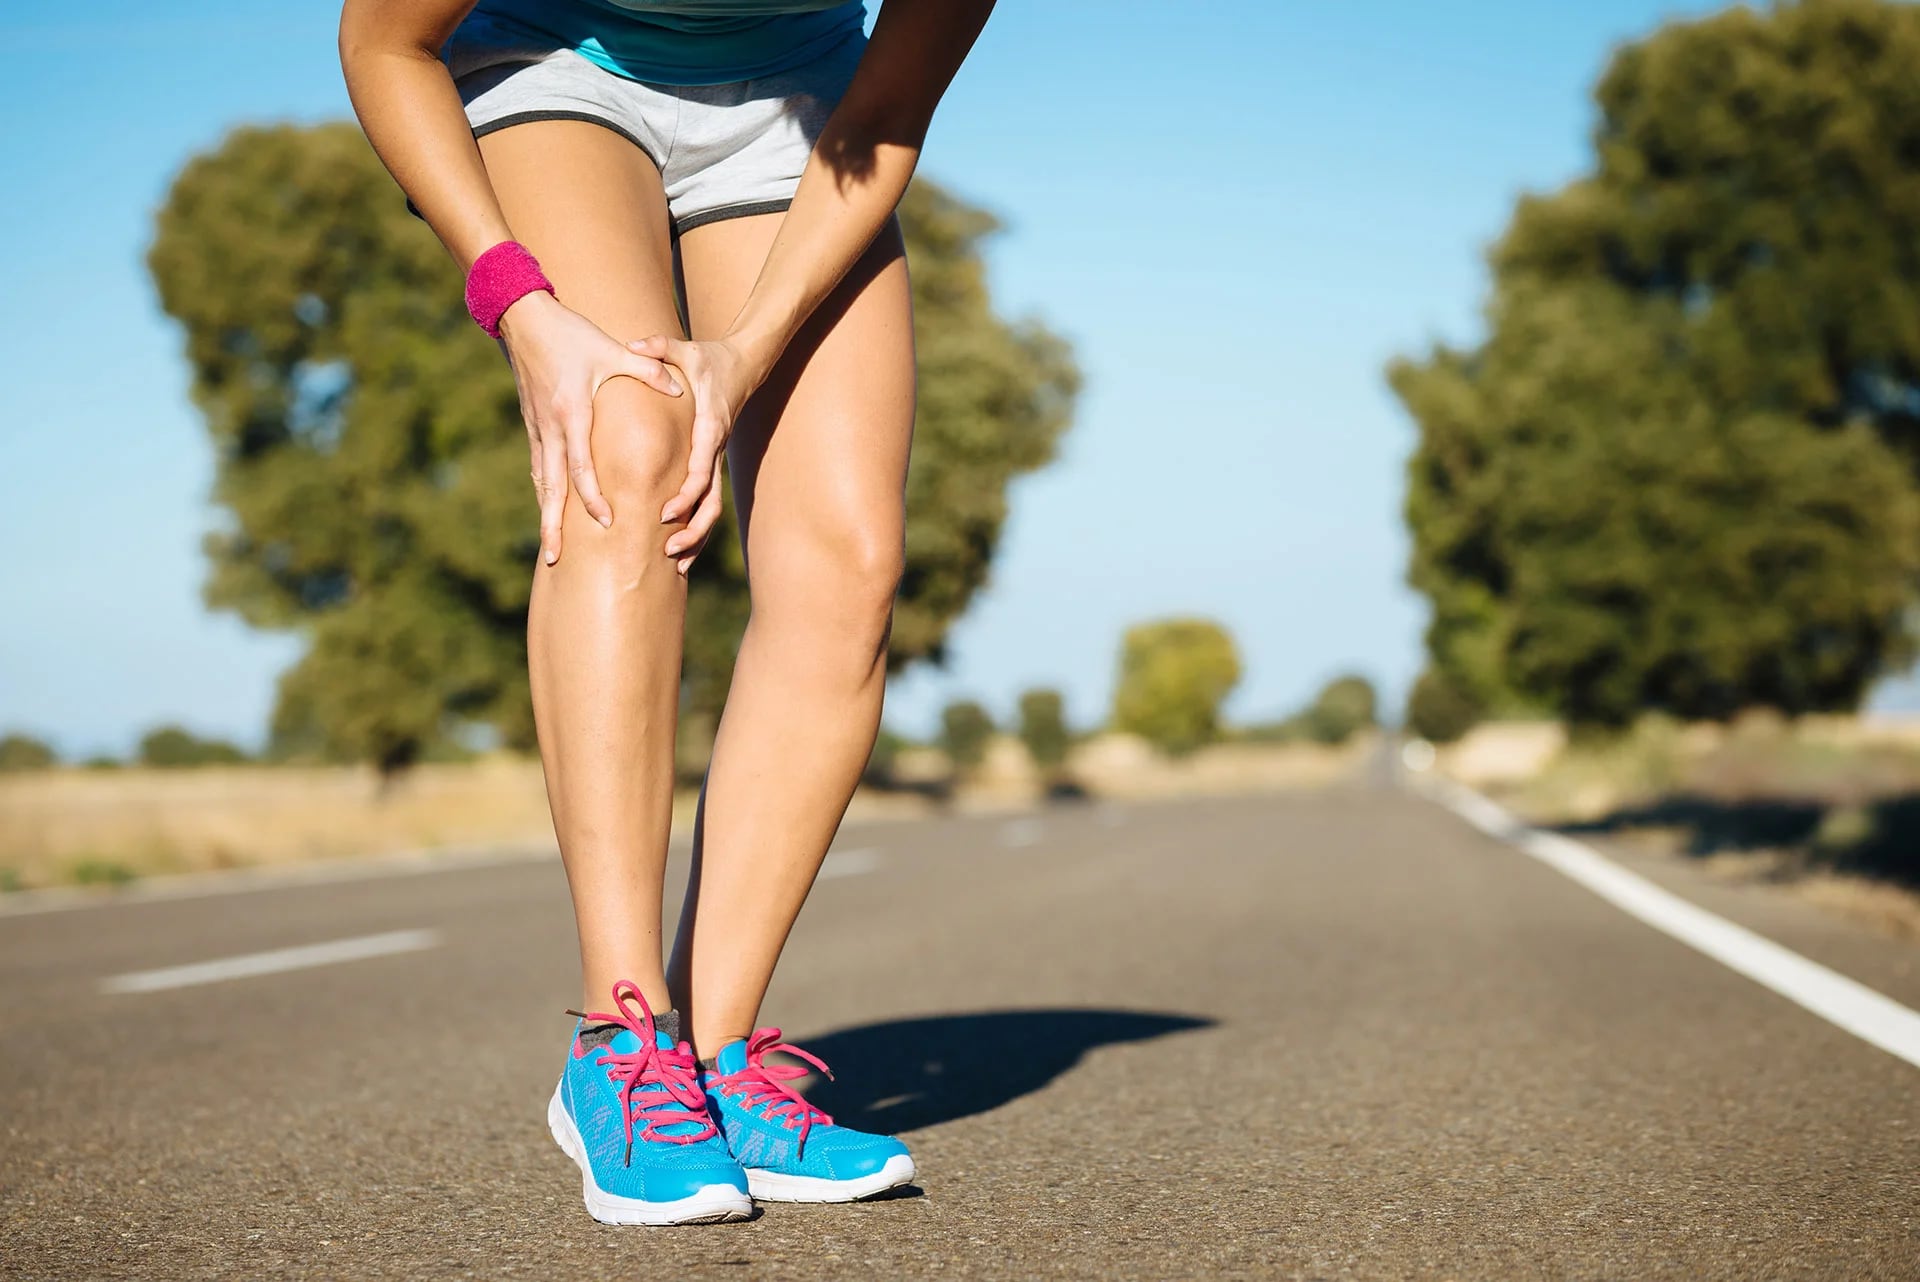 Las lesiones de rodilla es una de las más frecuentes en los deportistas (Shutterstock)